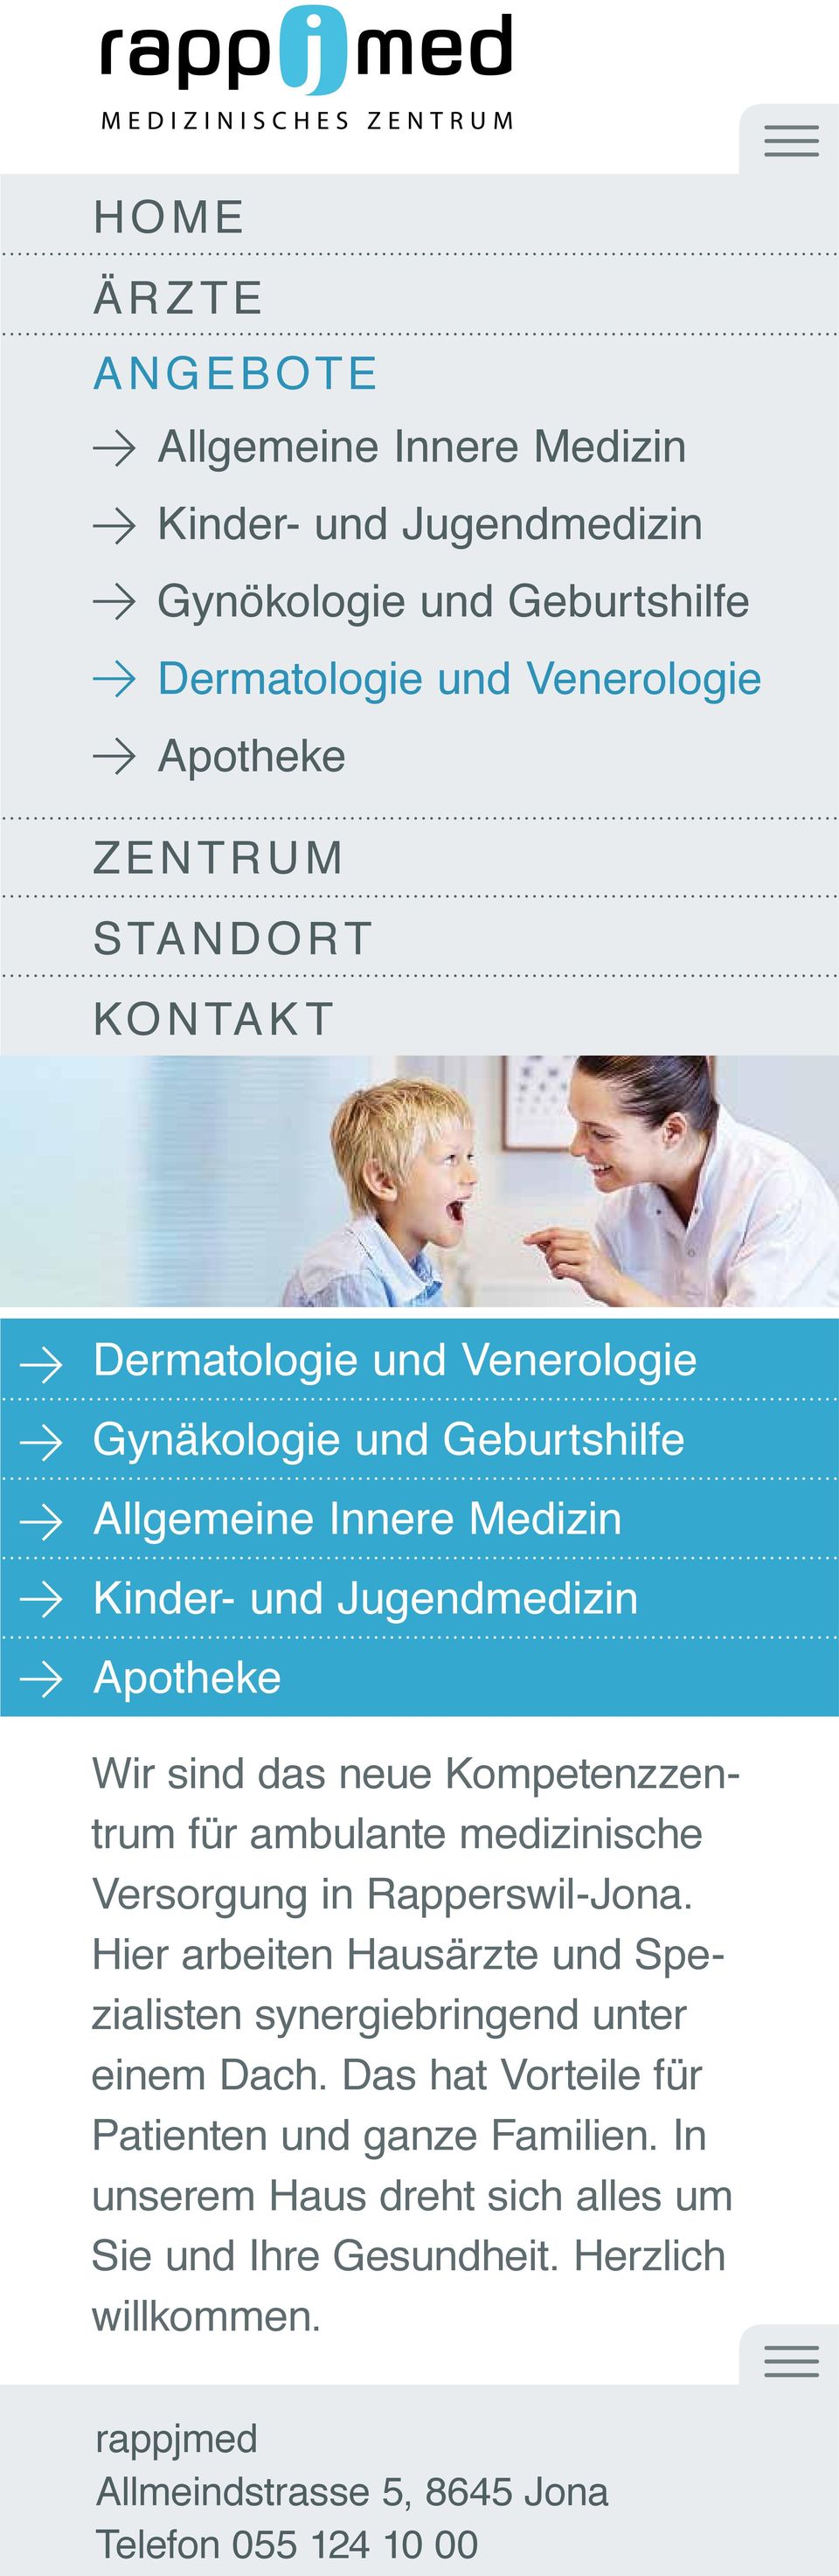 das neue Kompetenzzentrum für ambulante medizinische Versorgung in Rapperswil-Jona.